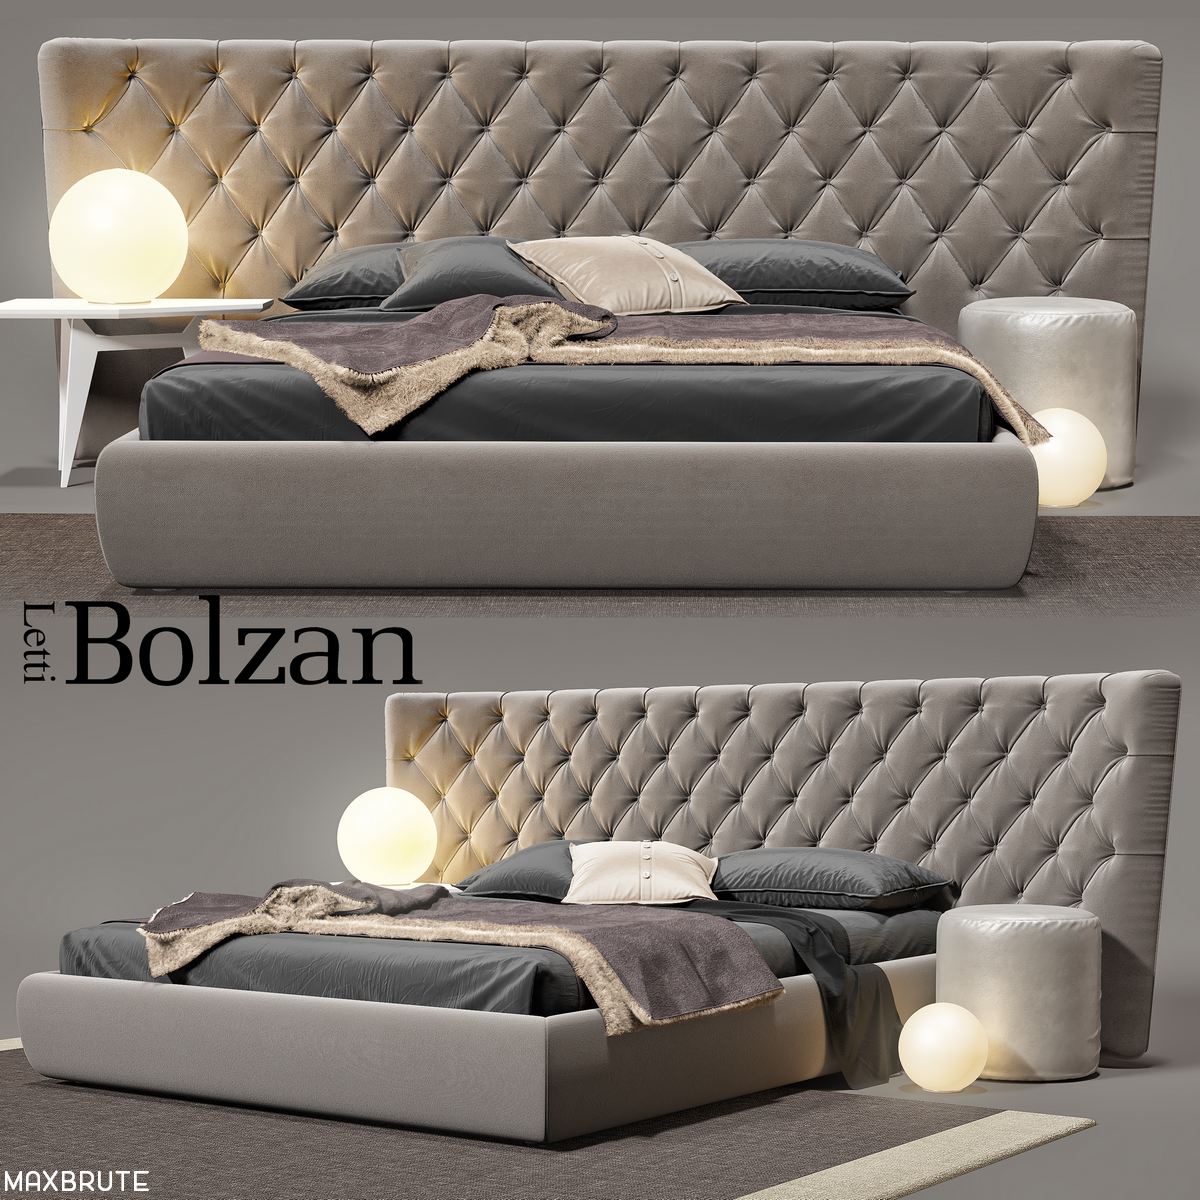 Bolzan Selene large bed 3dmodel